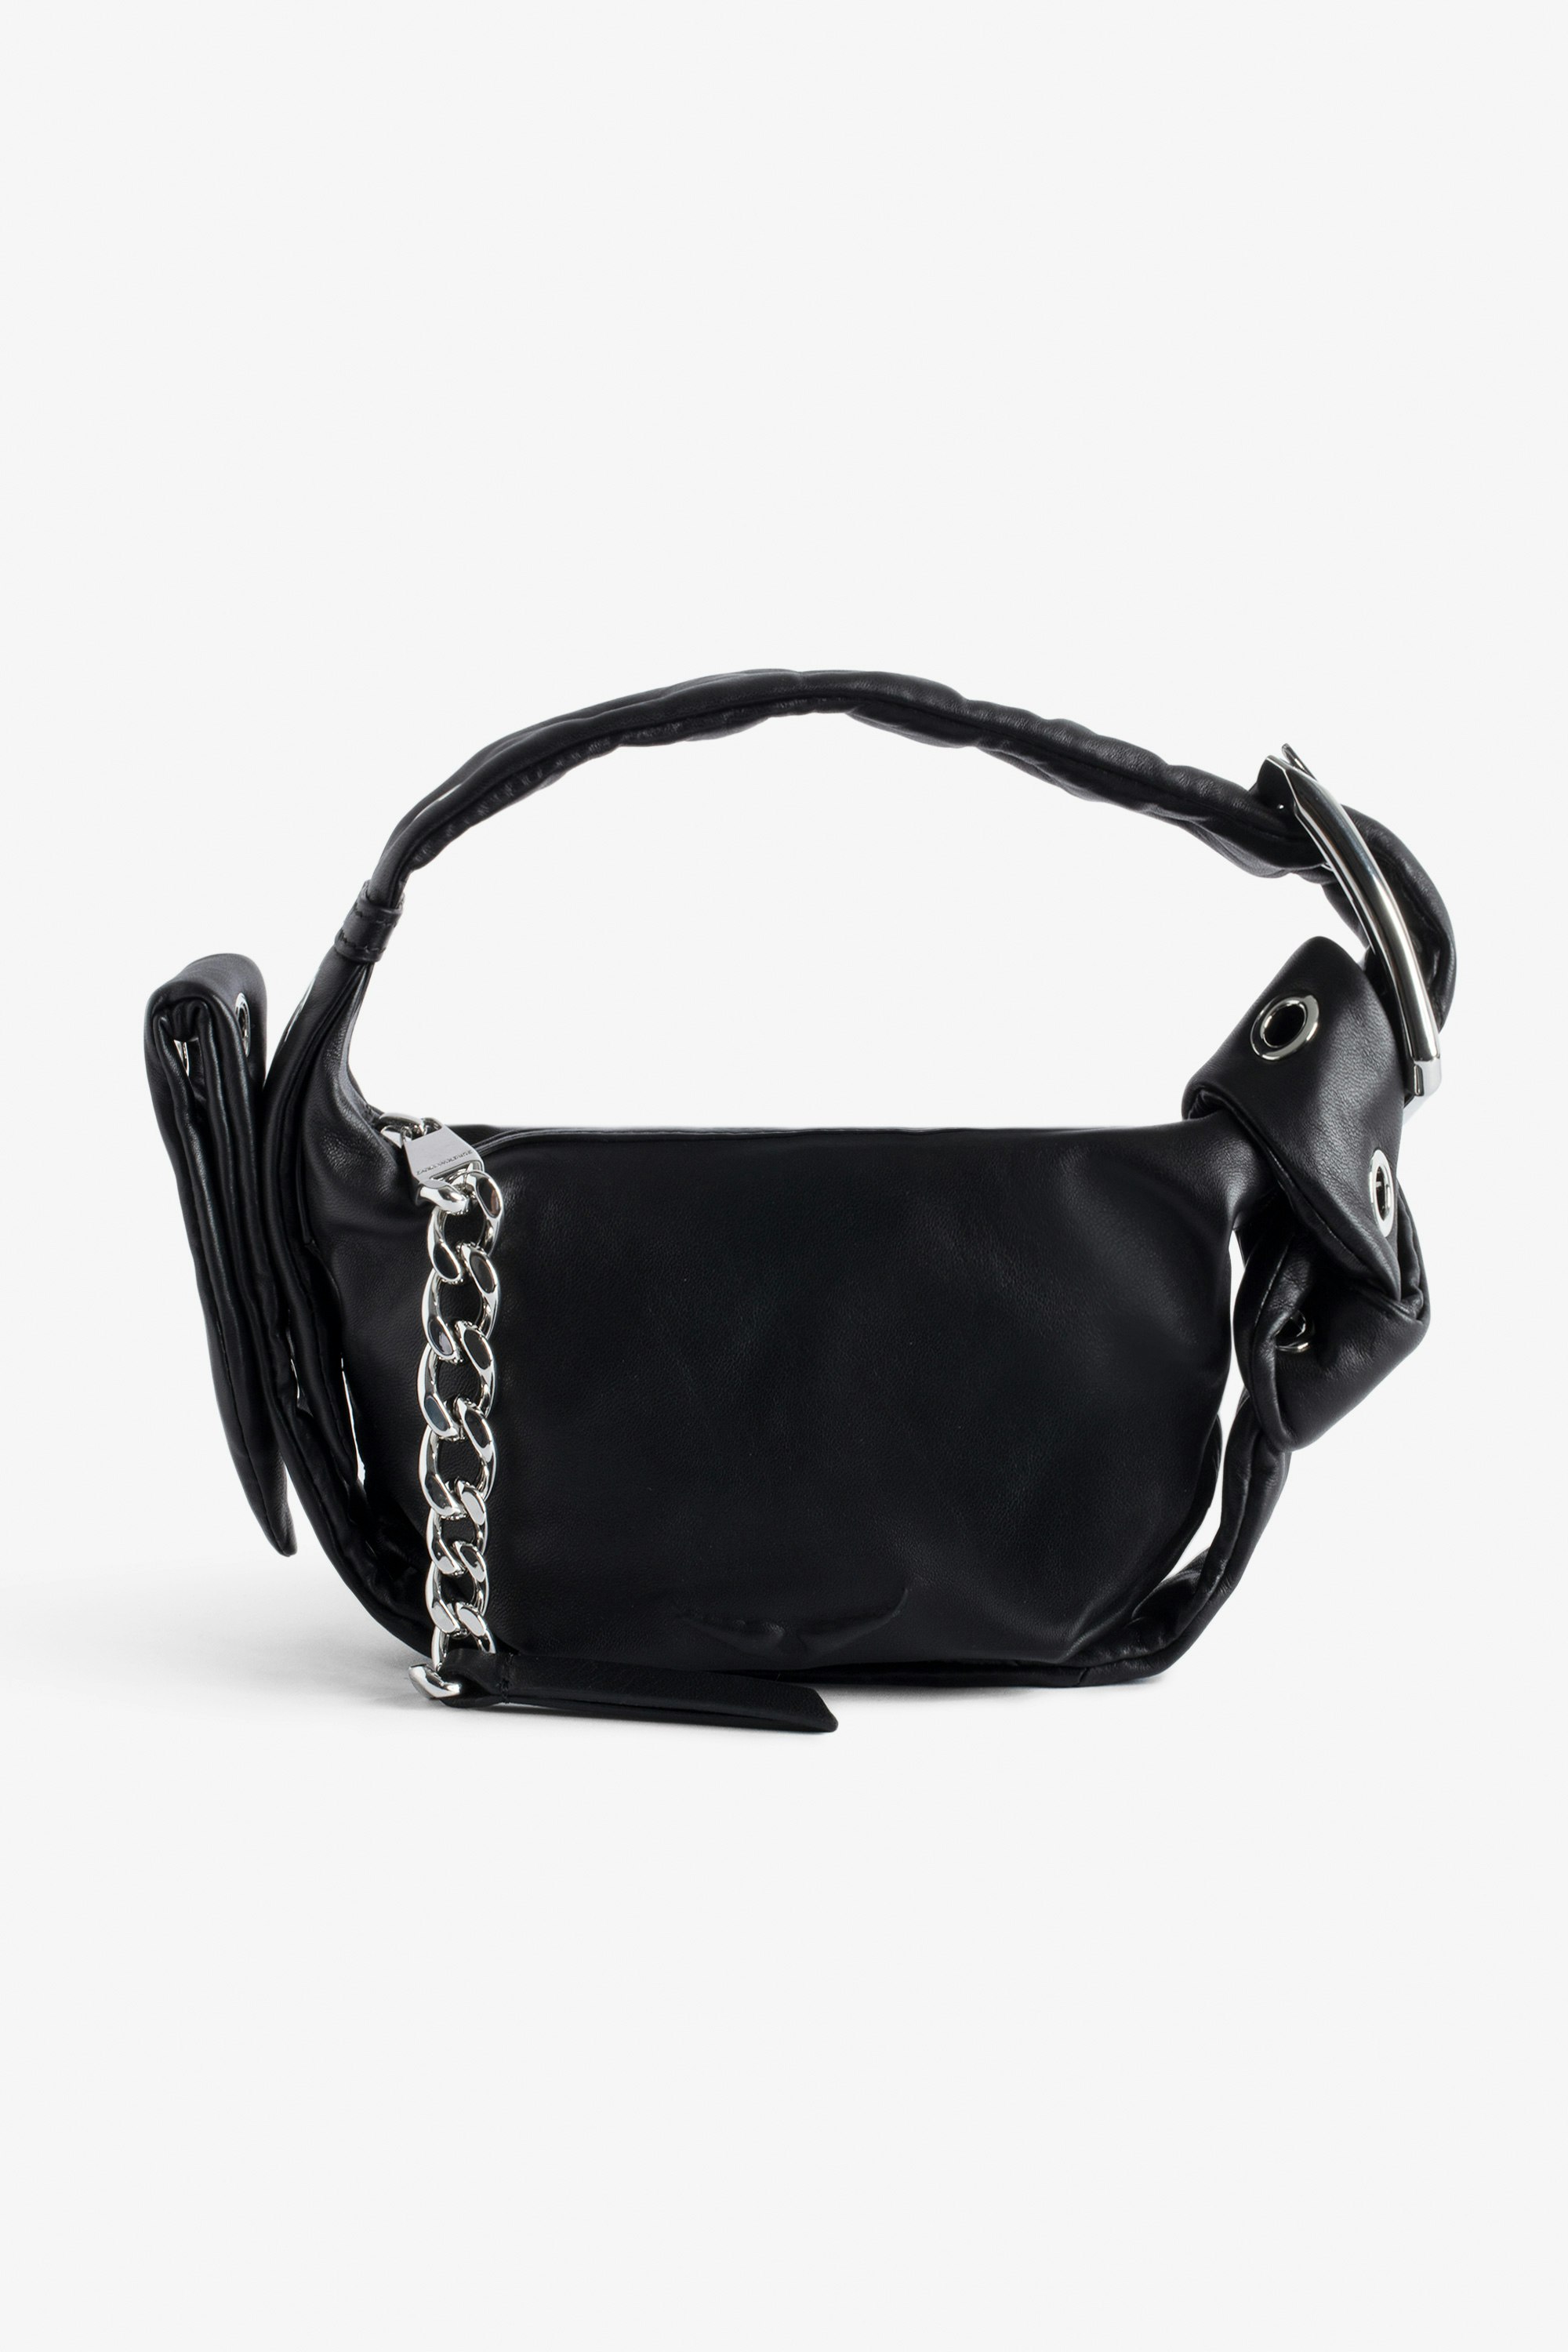 Sac Le Cecilia XS Obsession  Petit sac en cuir lisse noir à bandoulière et boucle métallique C femme.